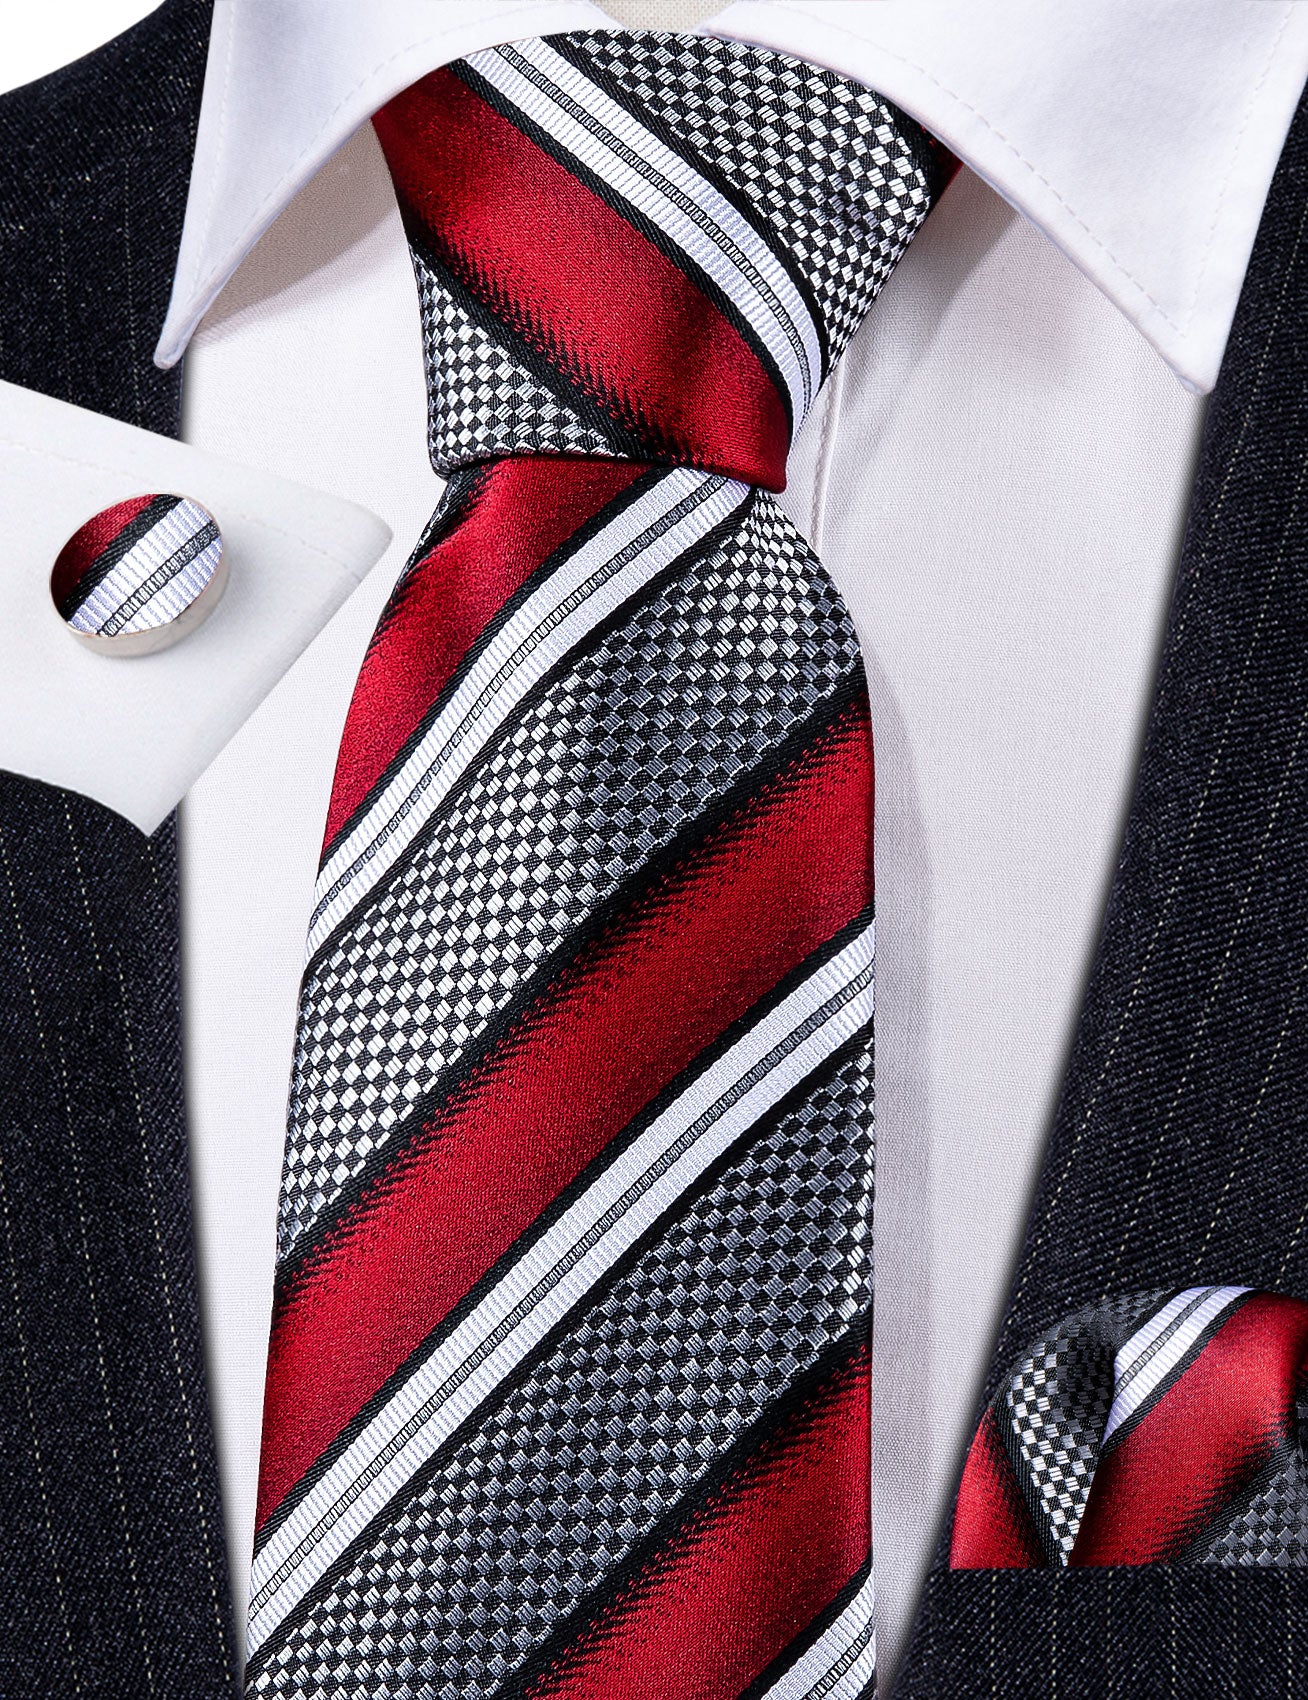 Barry.wang Red Tie Grey Striped Novelty Silk Men's Tie Hanky Cufflinks Set